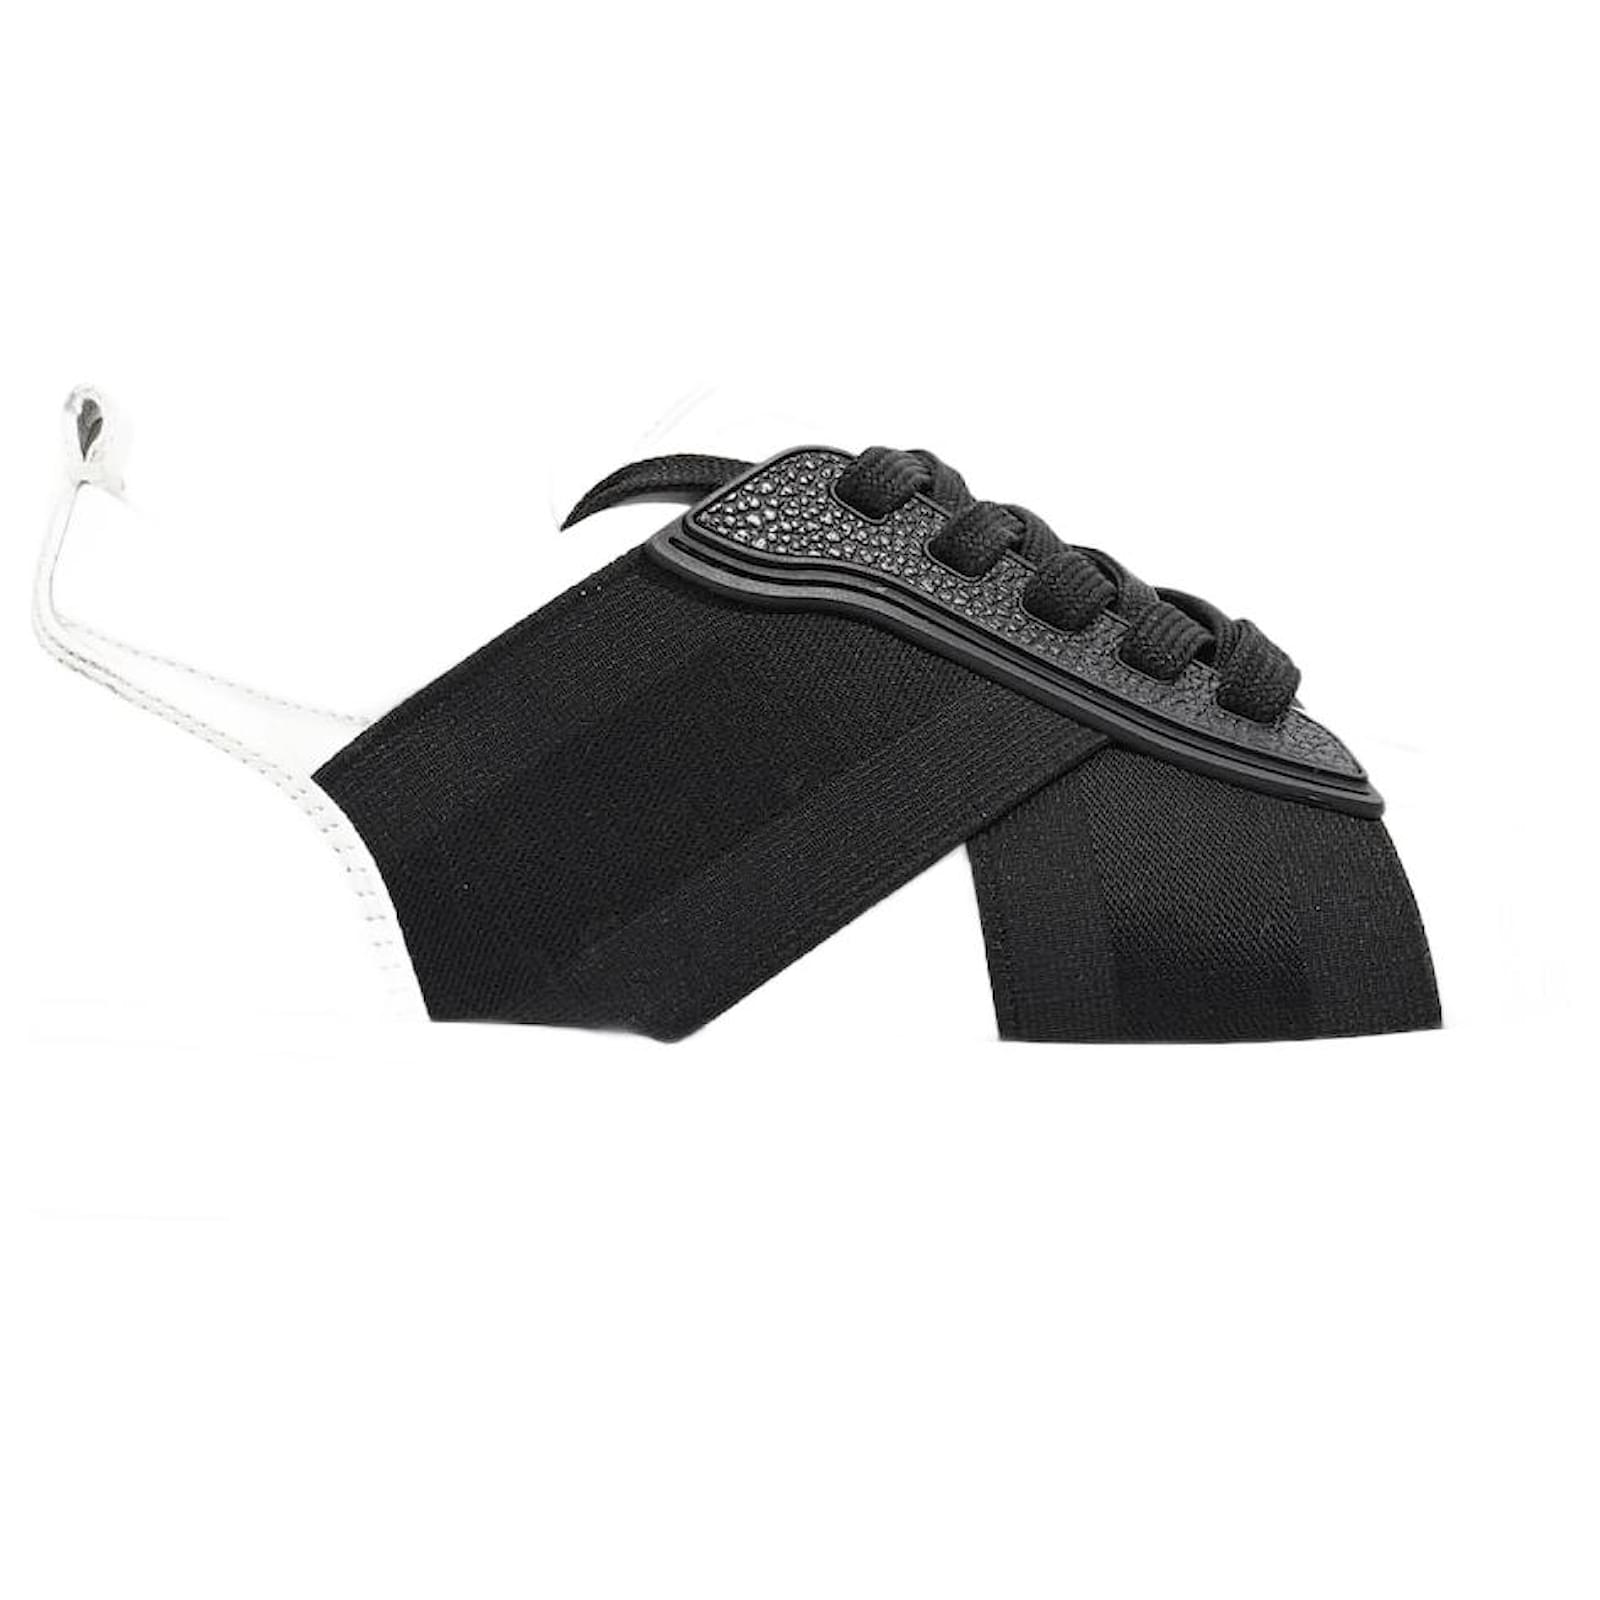 Christian Louboutin White/Black Leather Elastikid Sneakers Size 42.5  Christian Louboutin